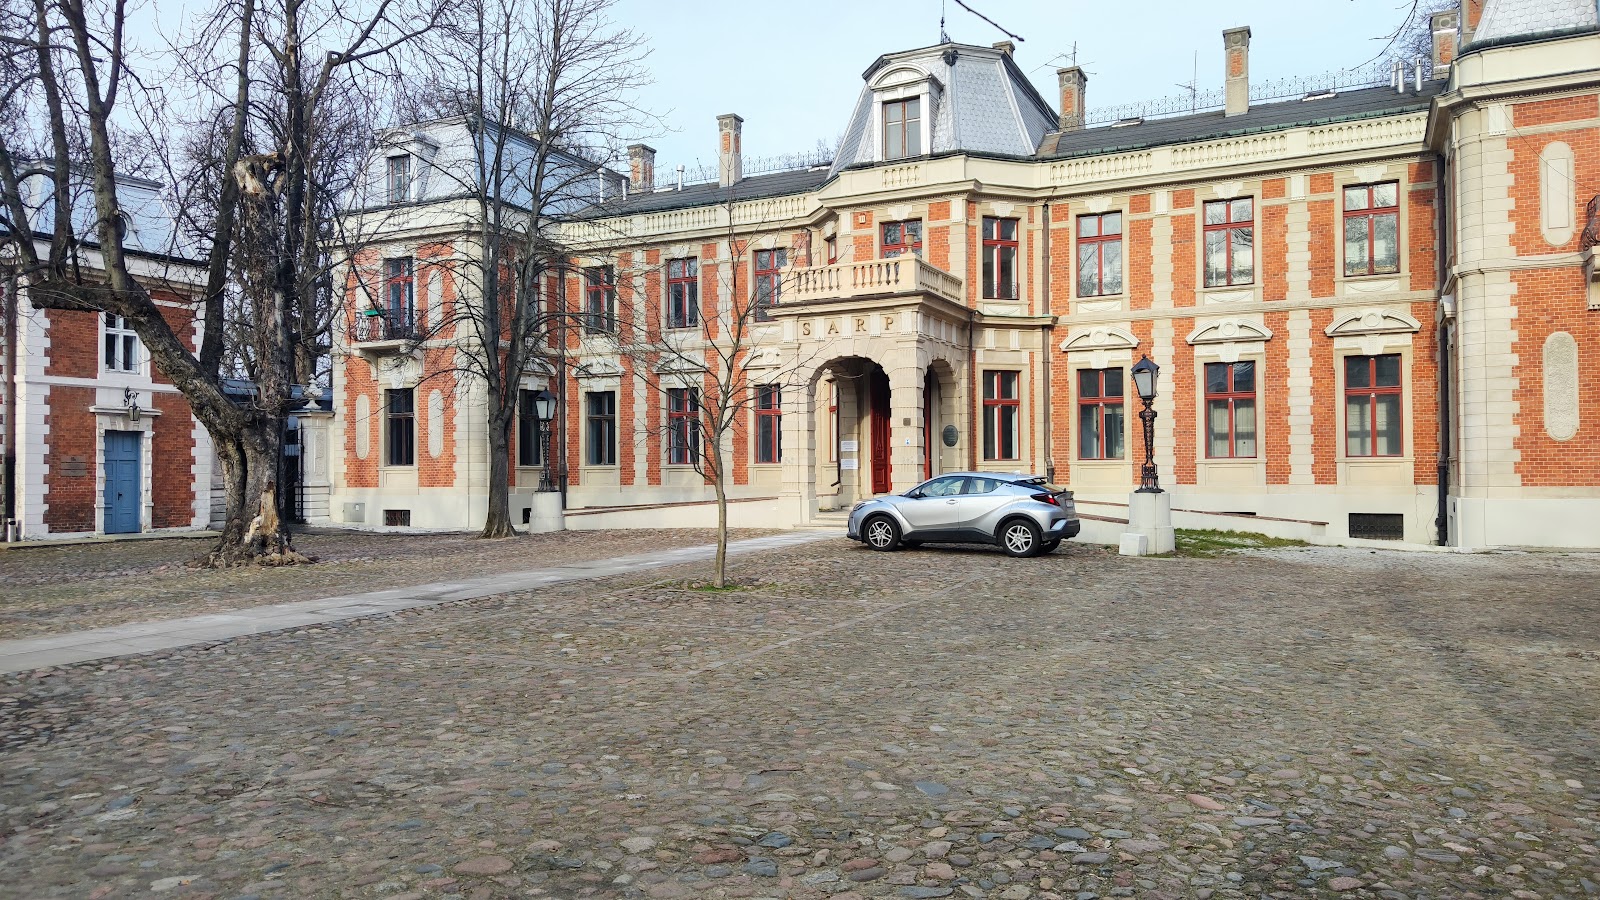 K. Zamoyski's Palace